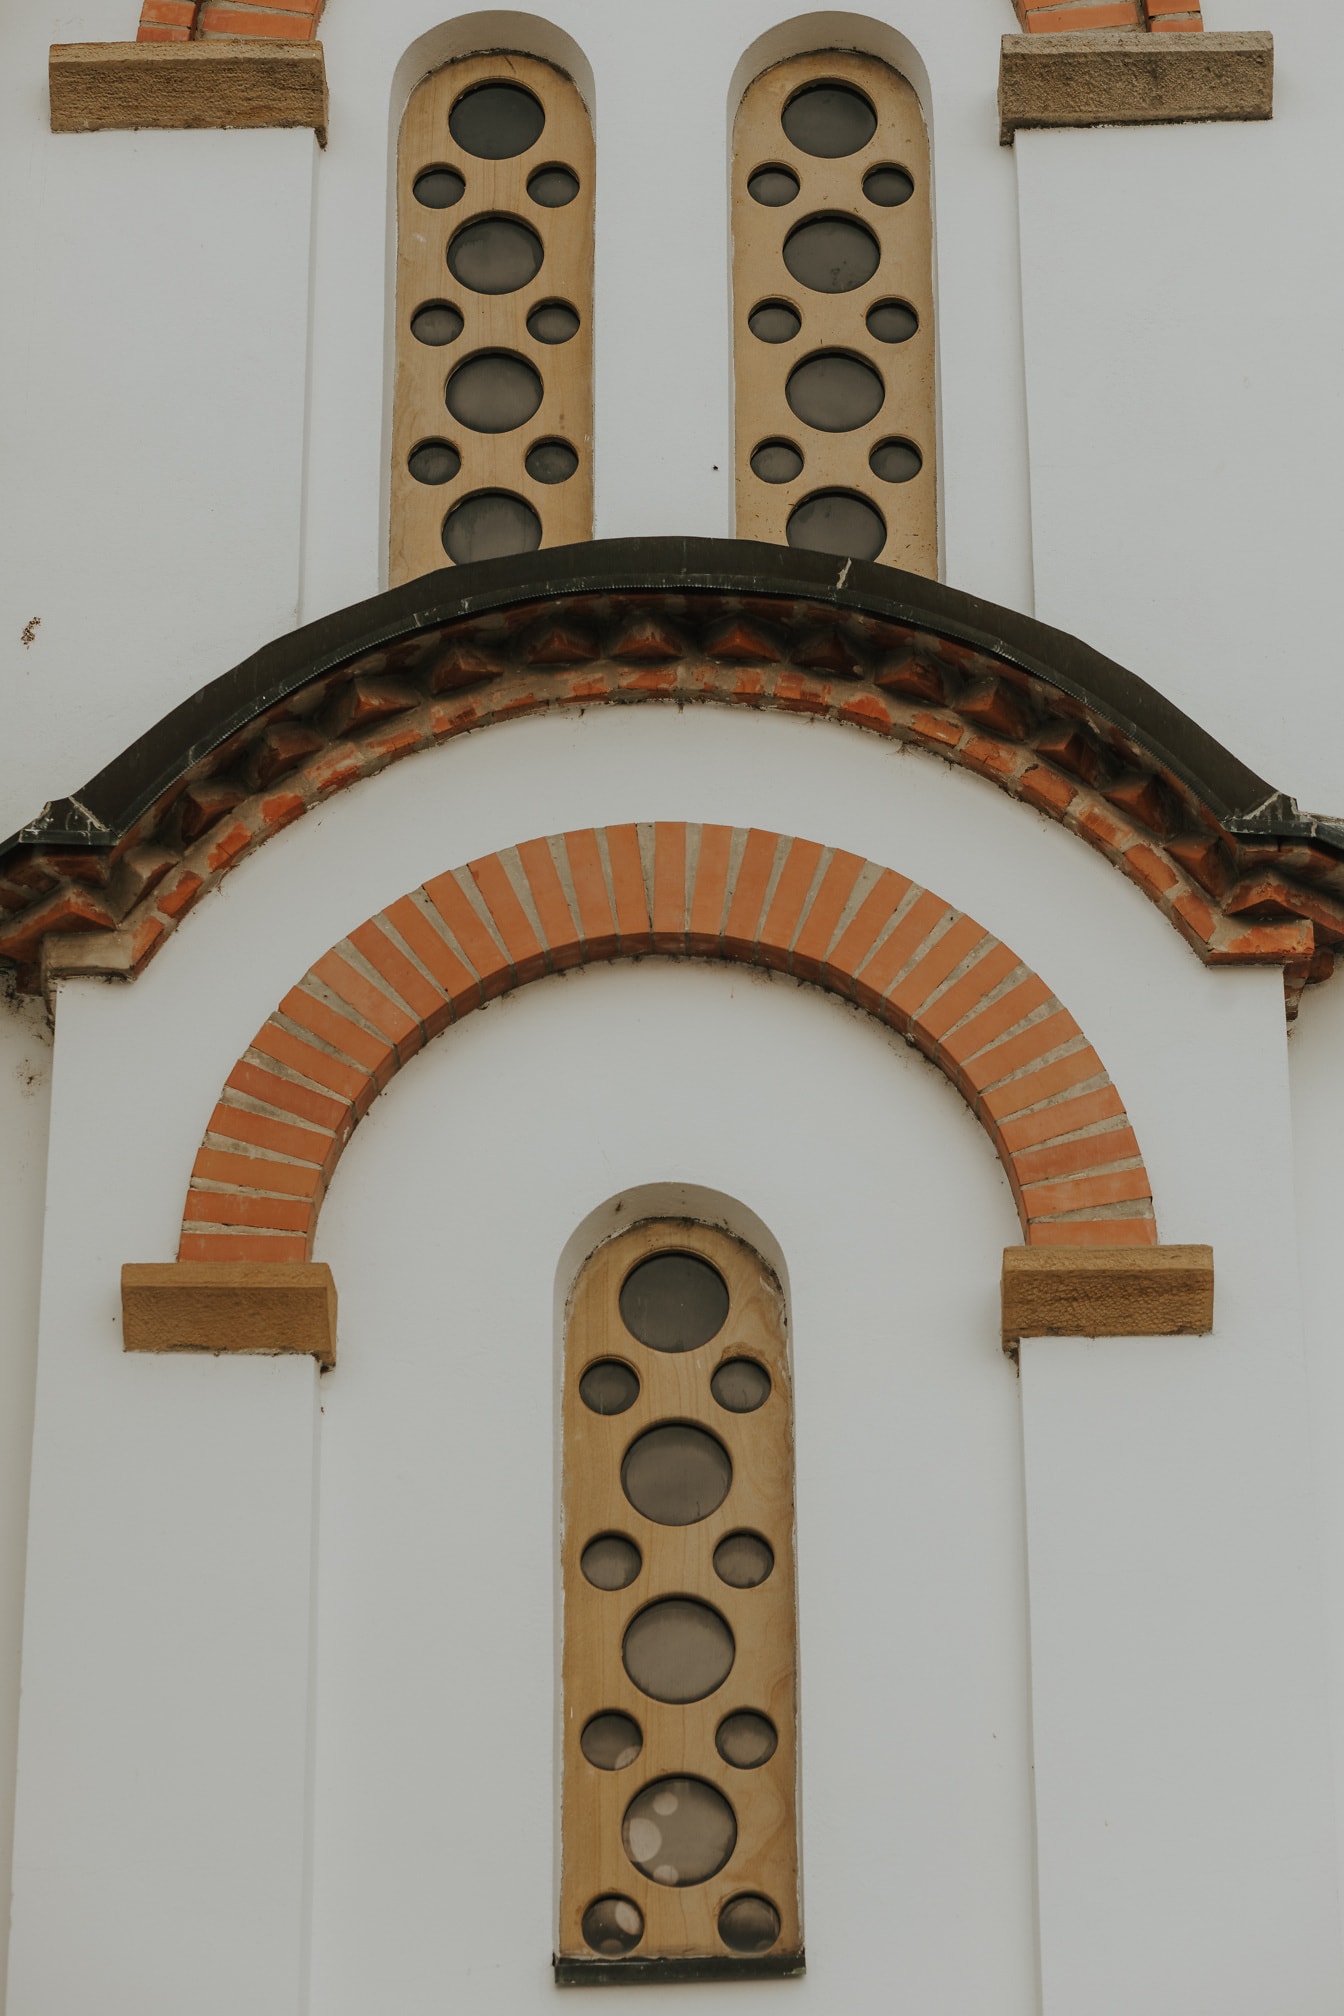 Fenêtres étroites dans le style architectural byzantin orthodoxe médiéval